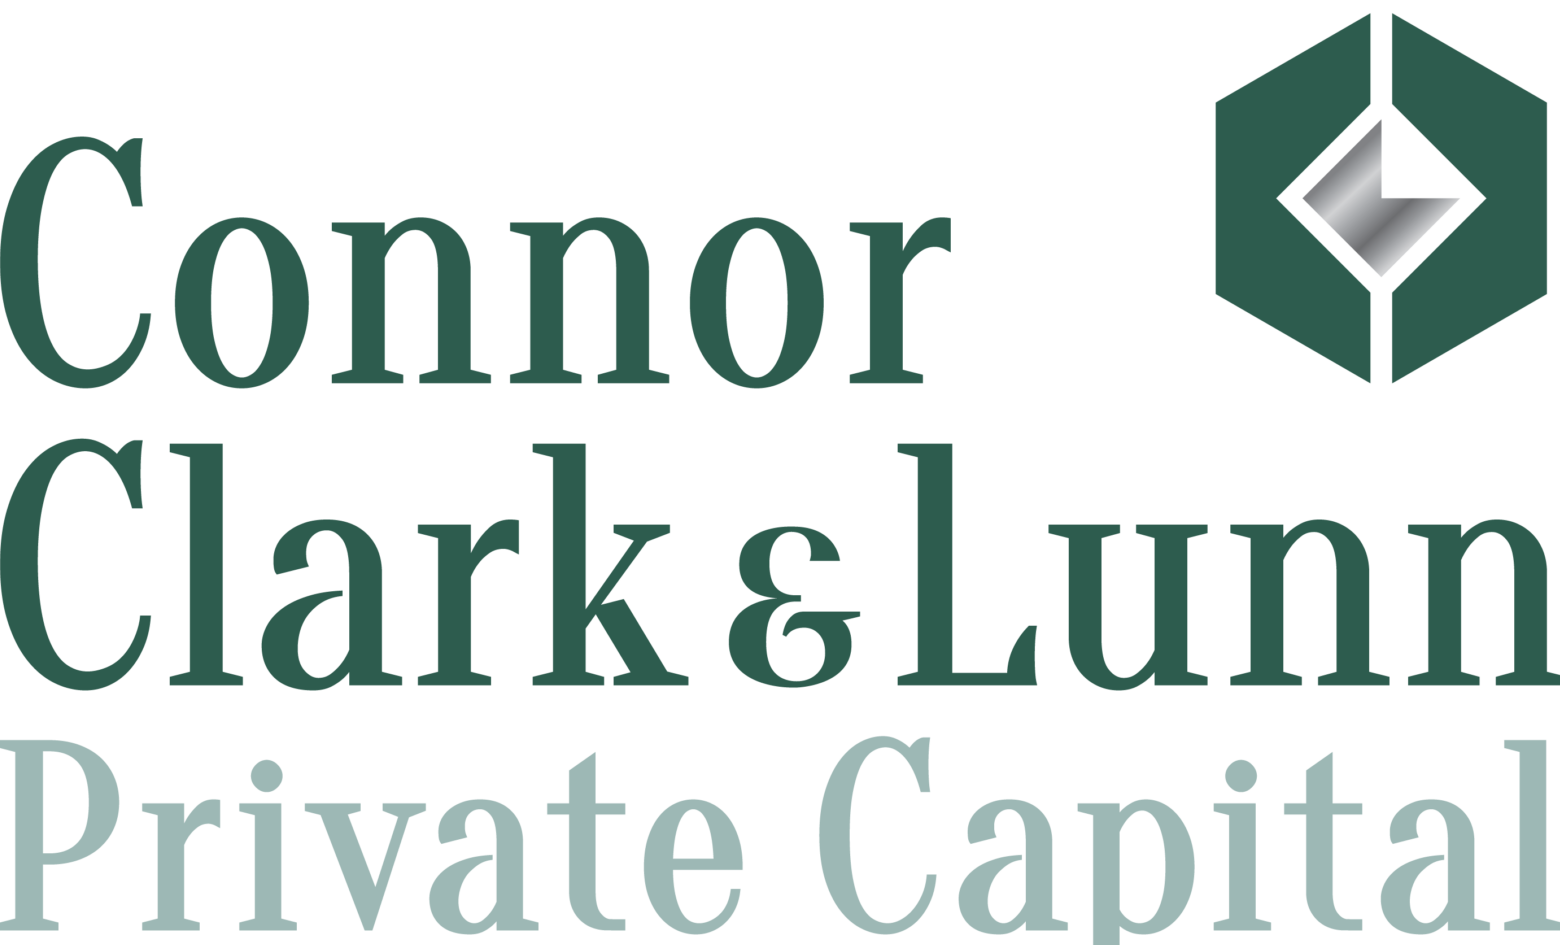 Connor, Clark & Lunn Private Capital Ltd